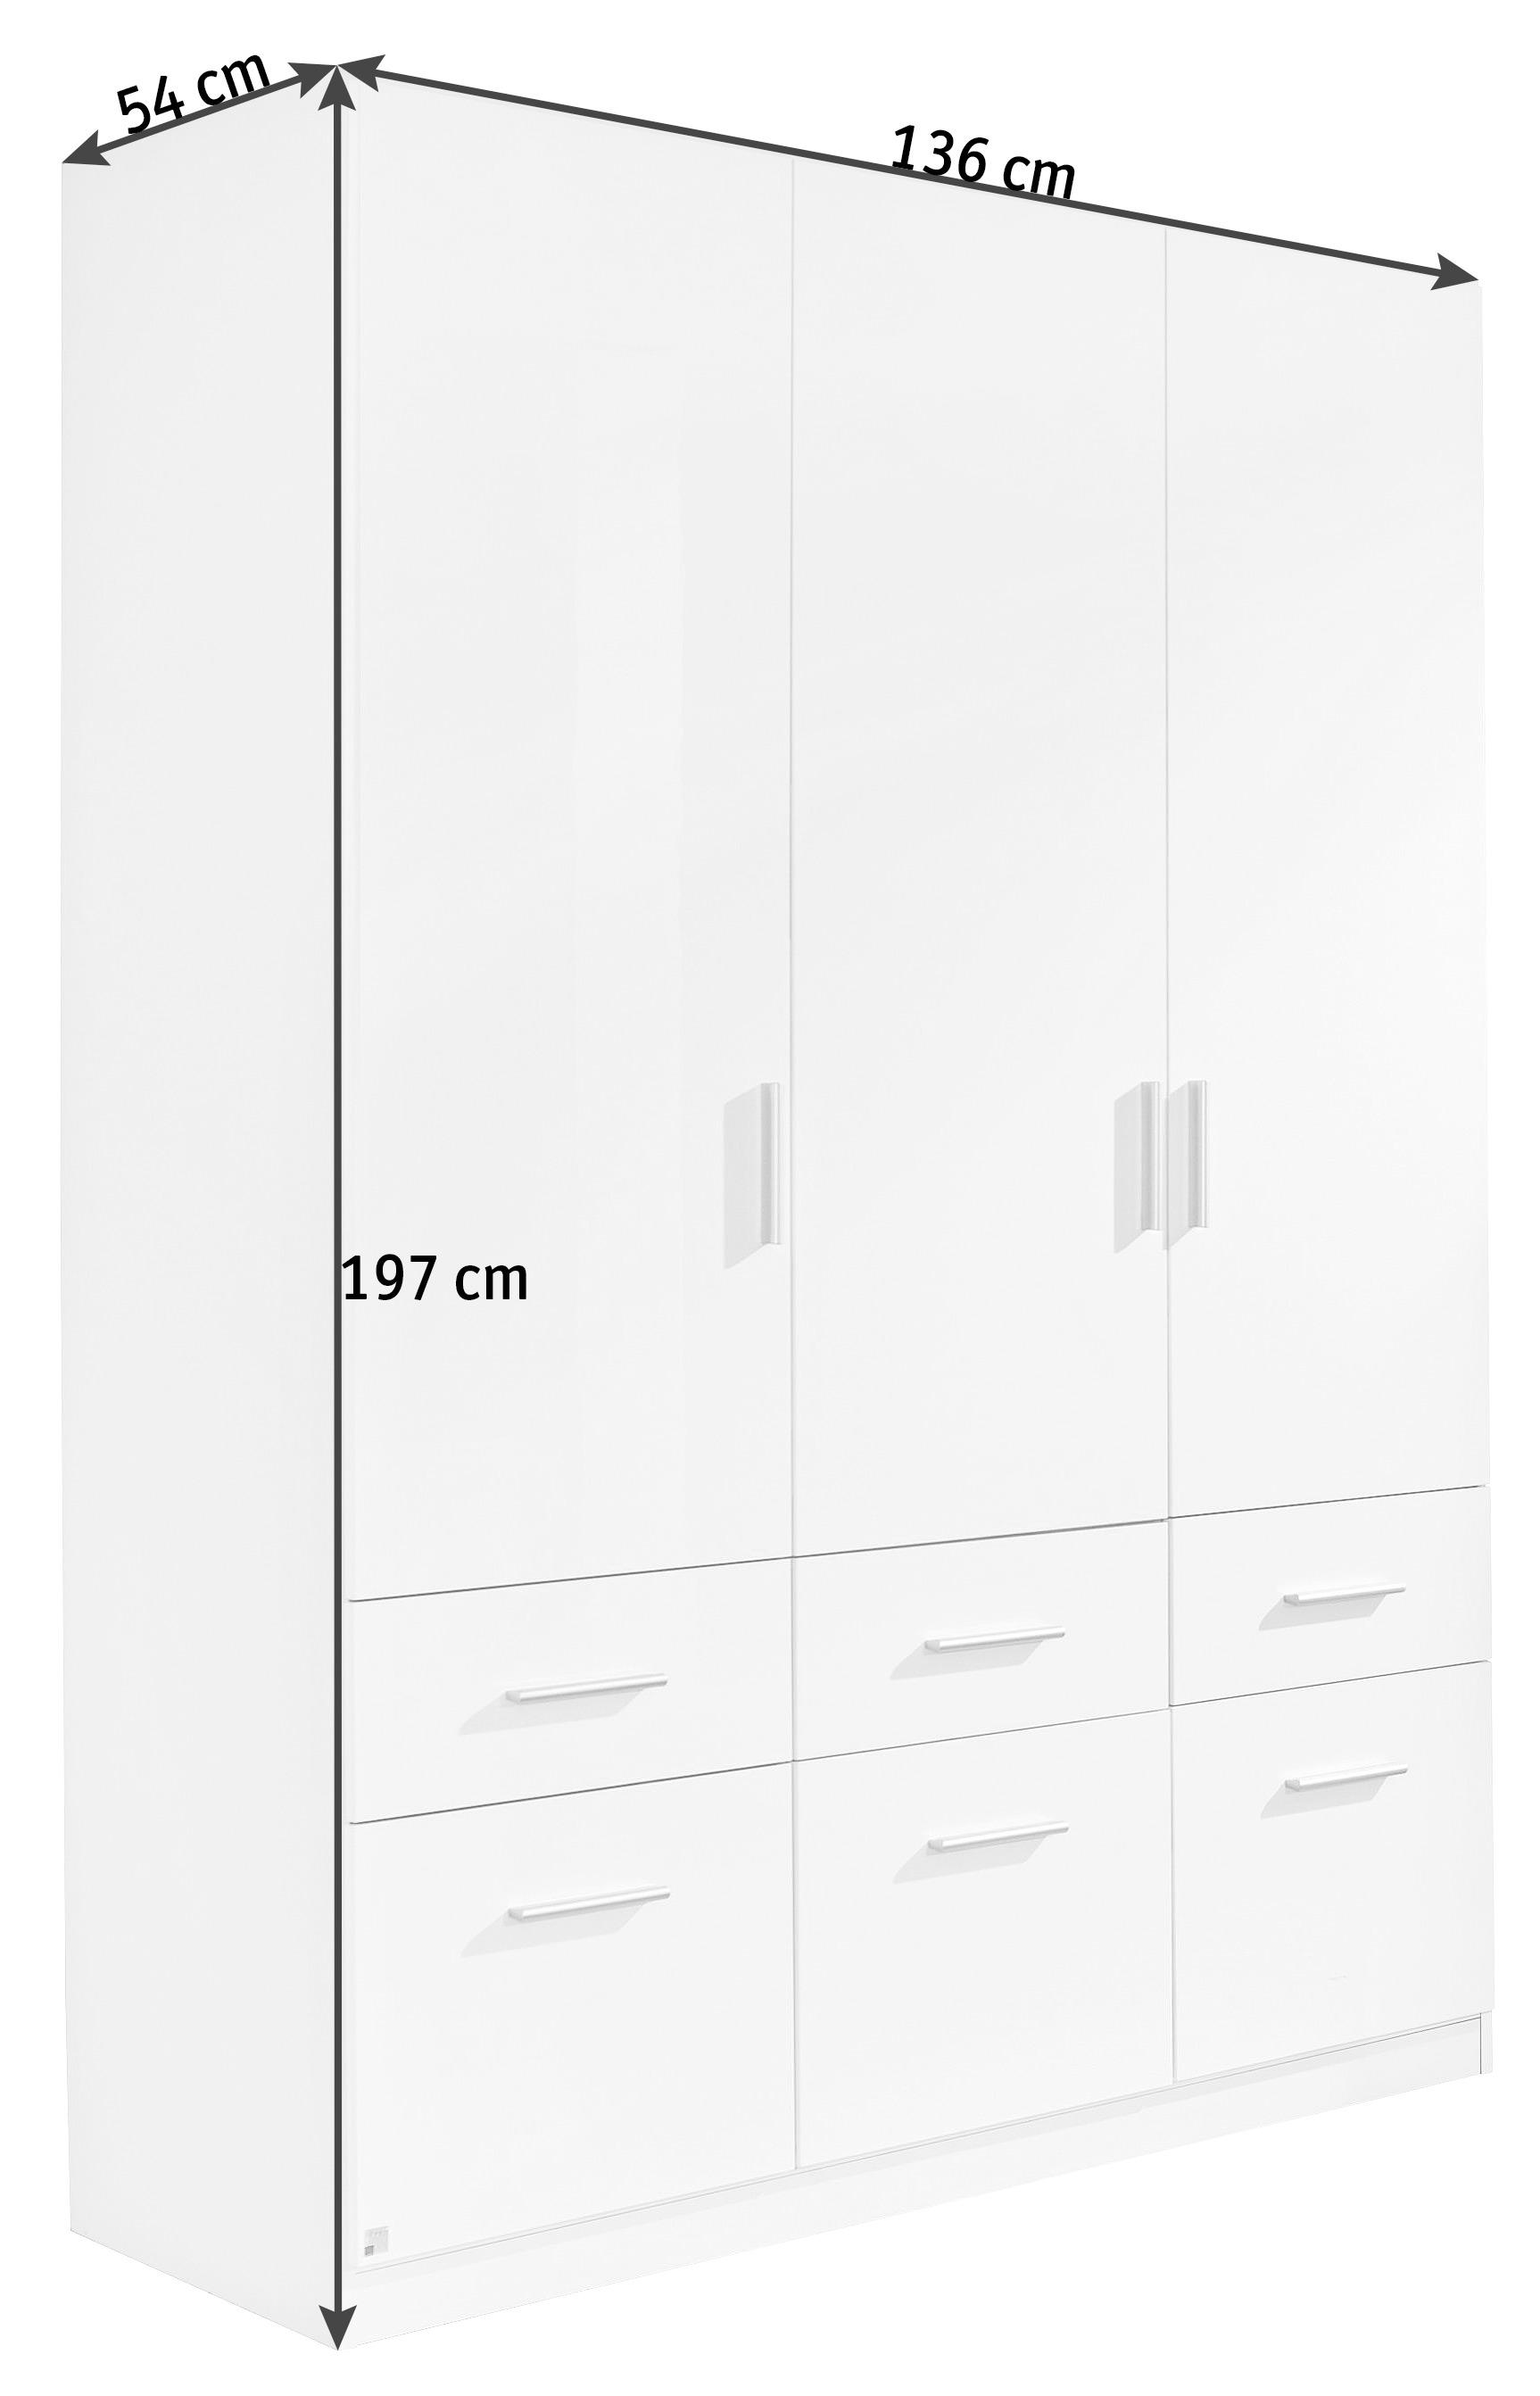 DREHTÜRENSCHRANK 136/197/54 cm 3-türig  - Weiß Hochglanz/Alufarben, Design, Holzwerkstoff/Kunststoff (136/197/54cm) - Carryhome